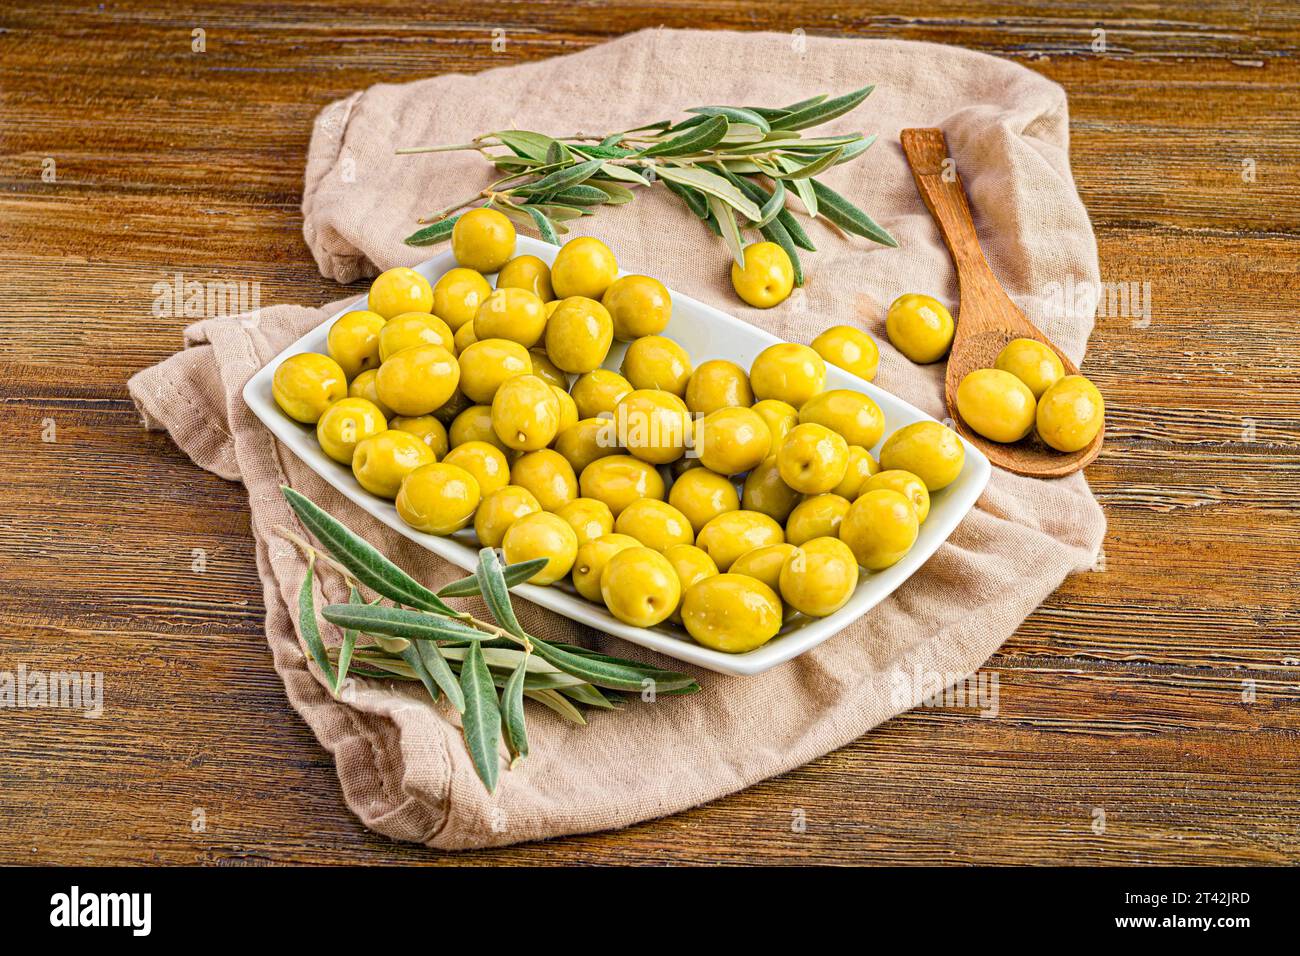 Une nature morte joyeuse avec un bol blanc d'olives de Manzanilla fraîchement cueillies et de feuilles de romarin, niché sur un tissu de lin naturel Banque D'Images